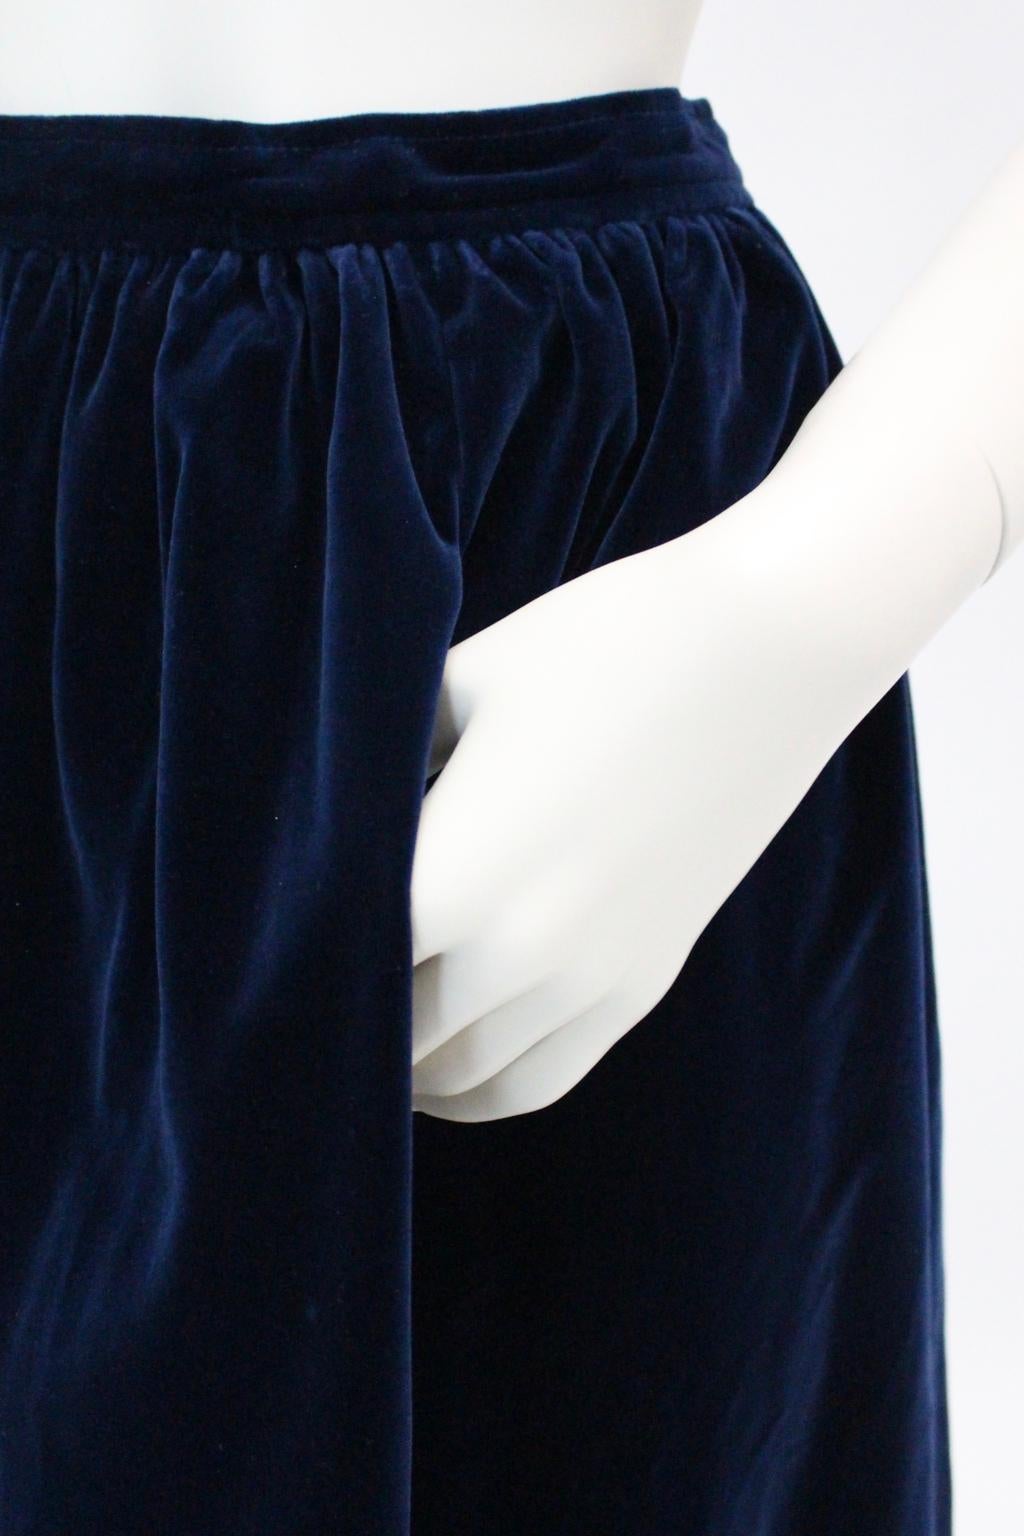 Blue Velvet Pleated Vintage Skirt by Yves Saint Laurent Rive Gauche For Sale 8